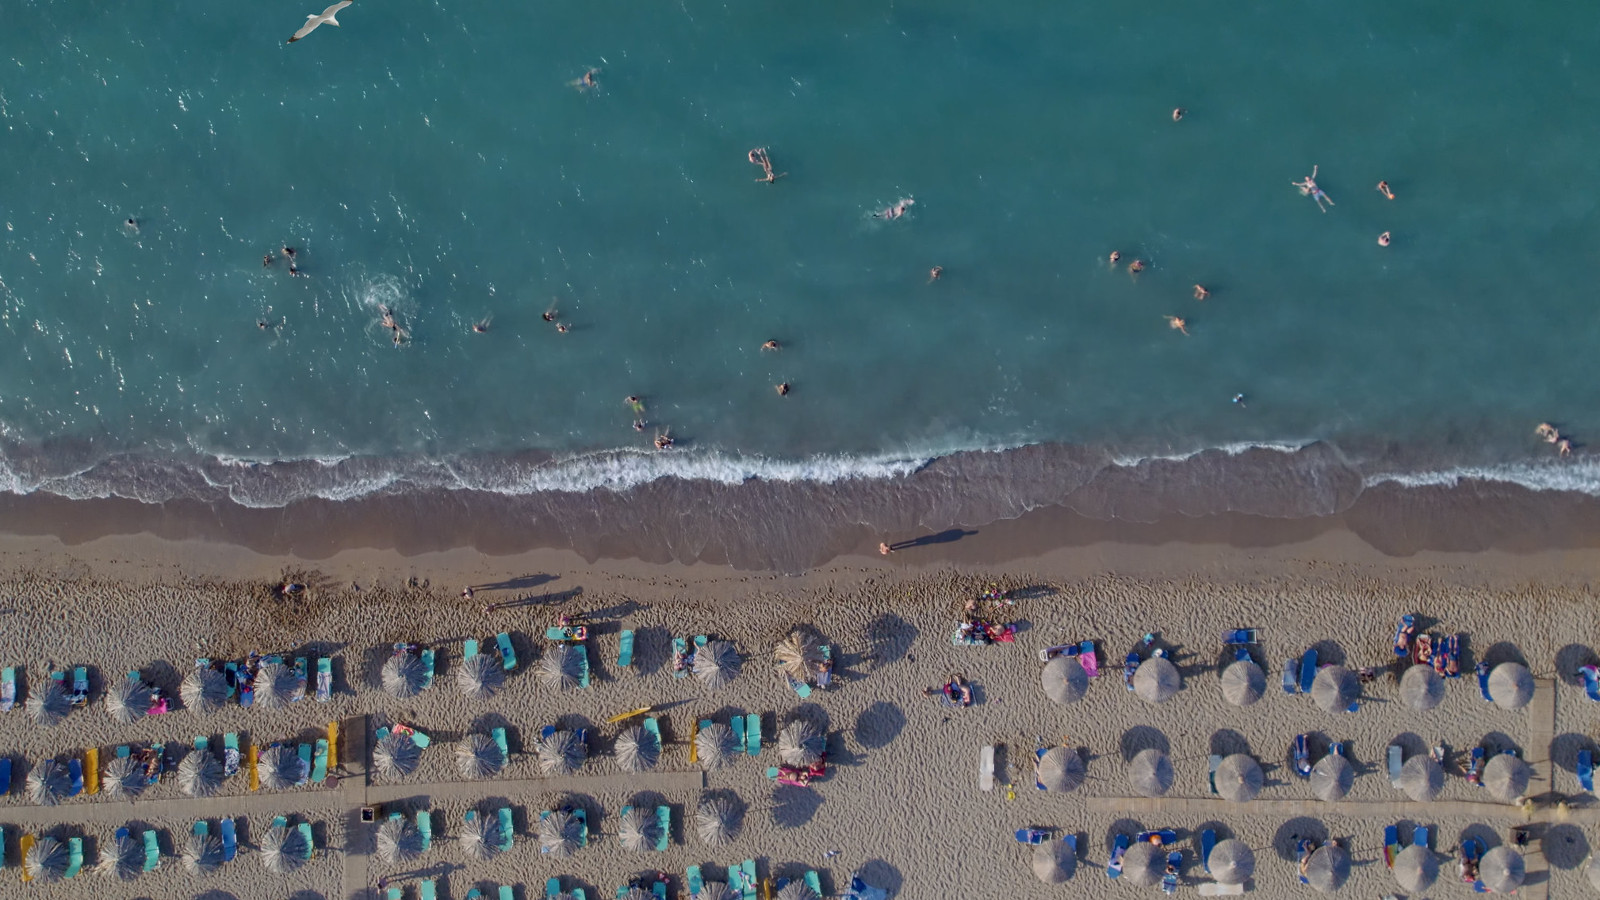 Kuvassa on sinistä merta ja ihmisiä aurinkotuoleissa ylhäältä päin kuvattuna. 